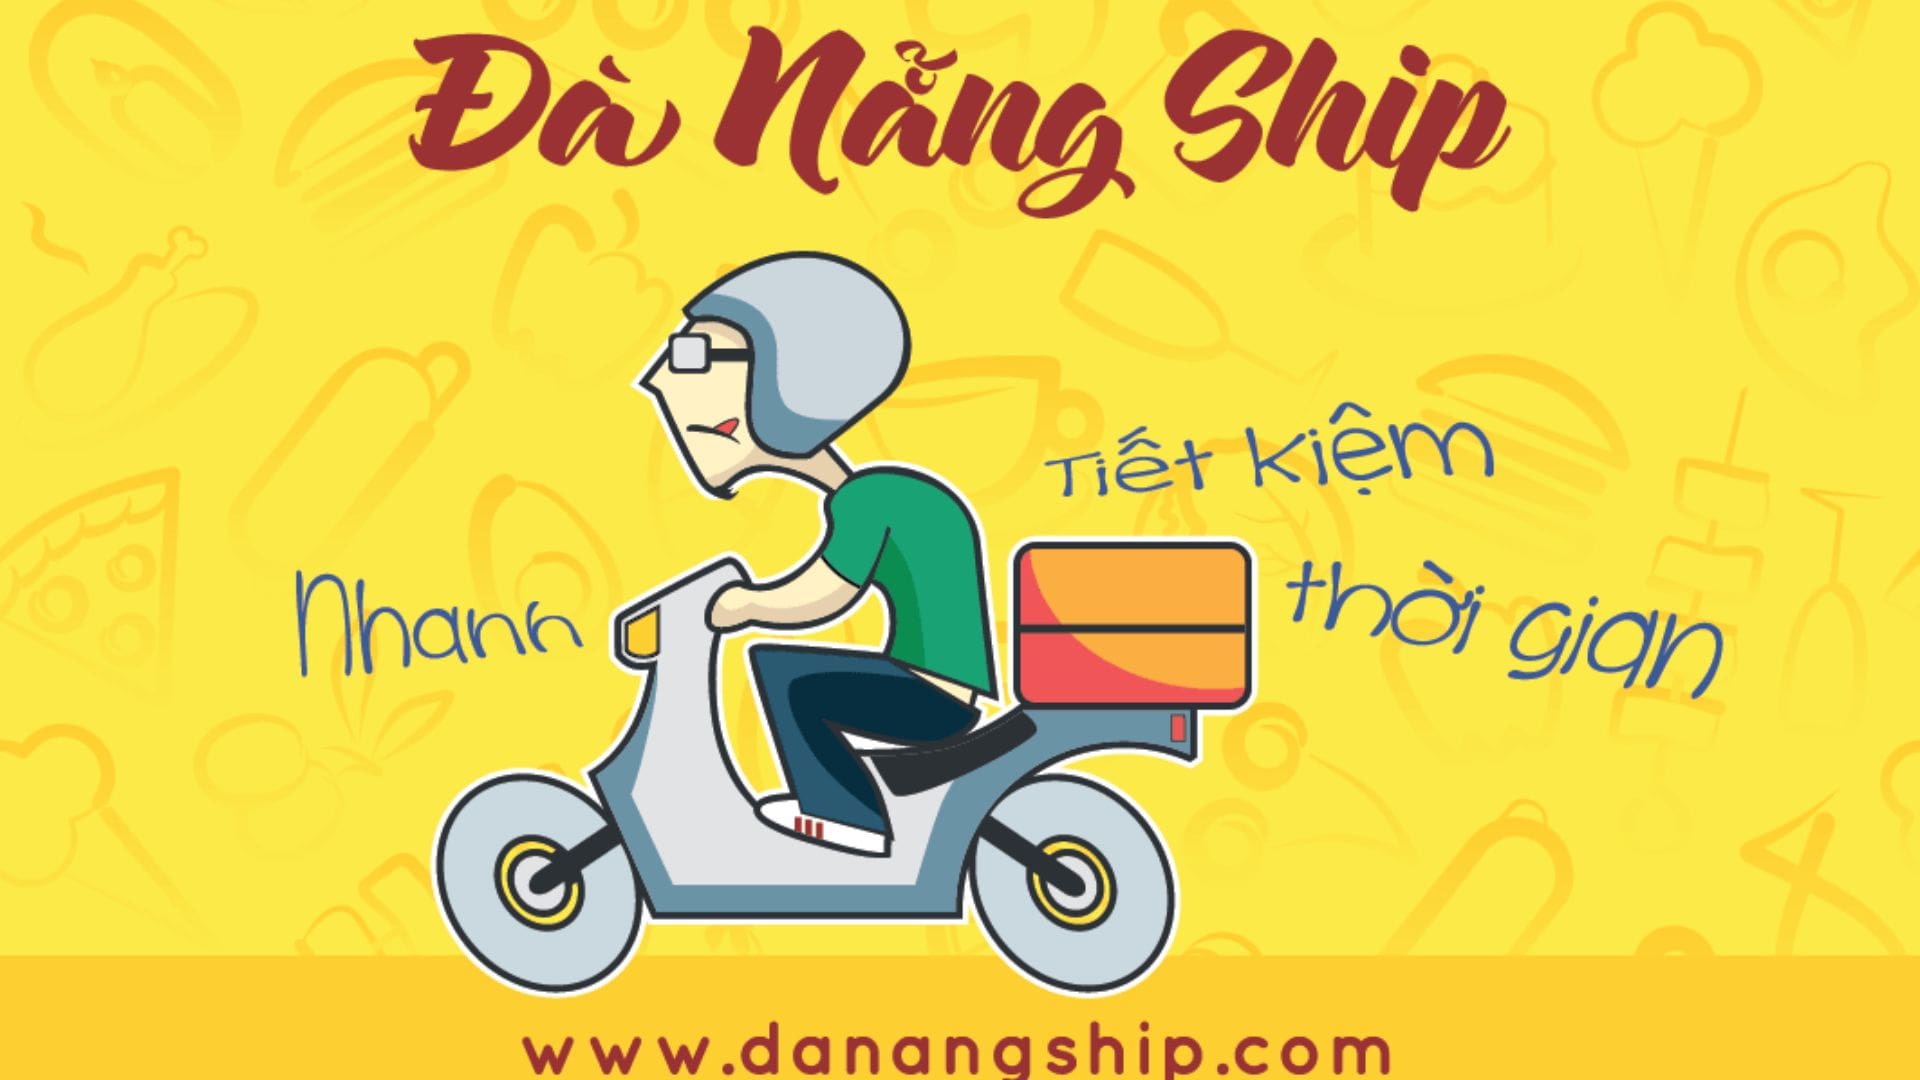 Đà Nẵng Ship - Dịch vụ ship hàng Đà Nẵng nổi tiếng